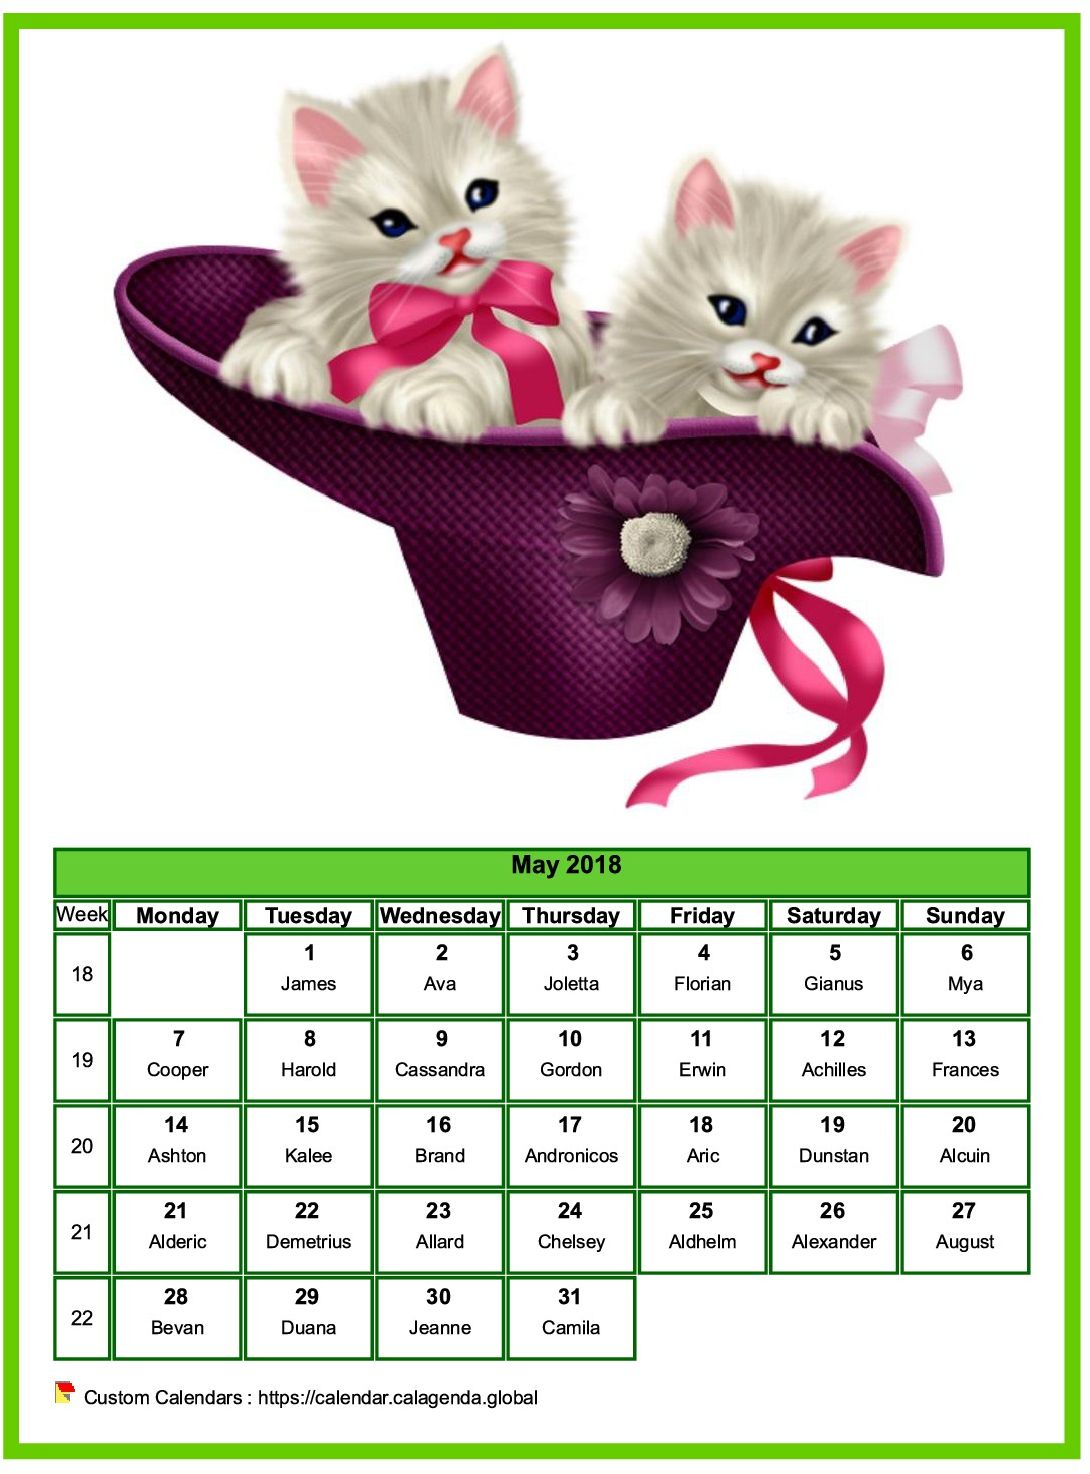 Calendar may 2018 cats